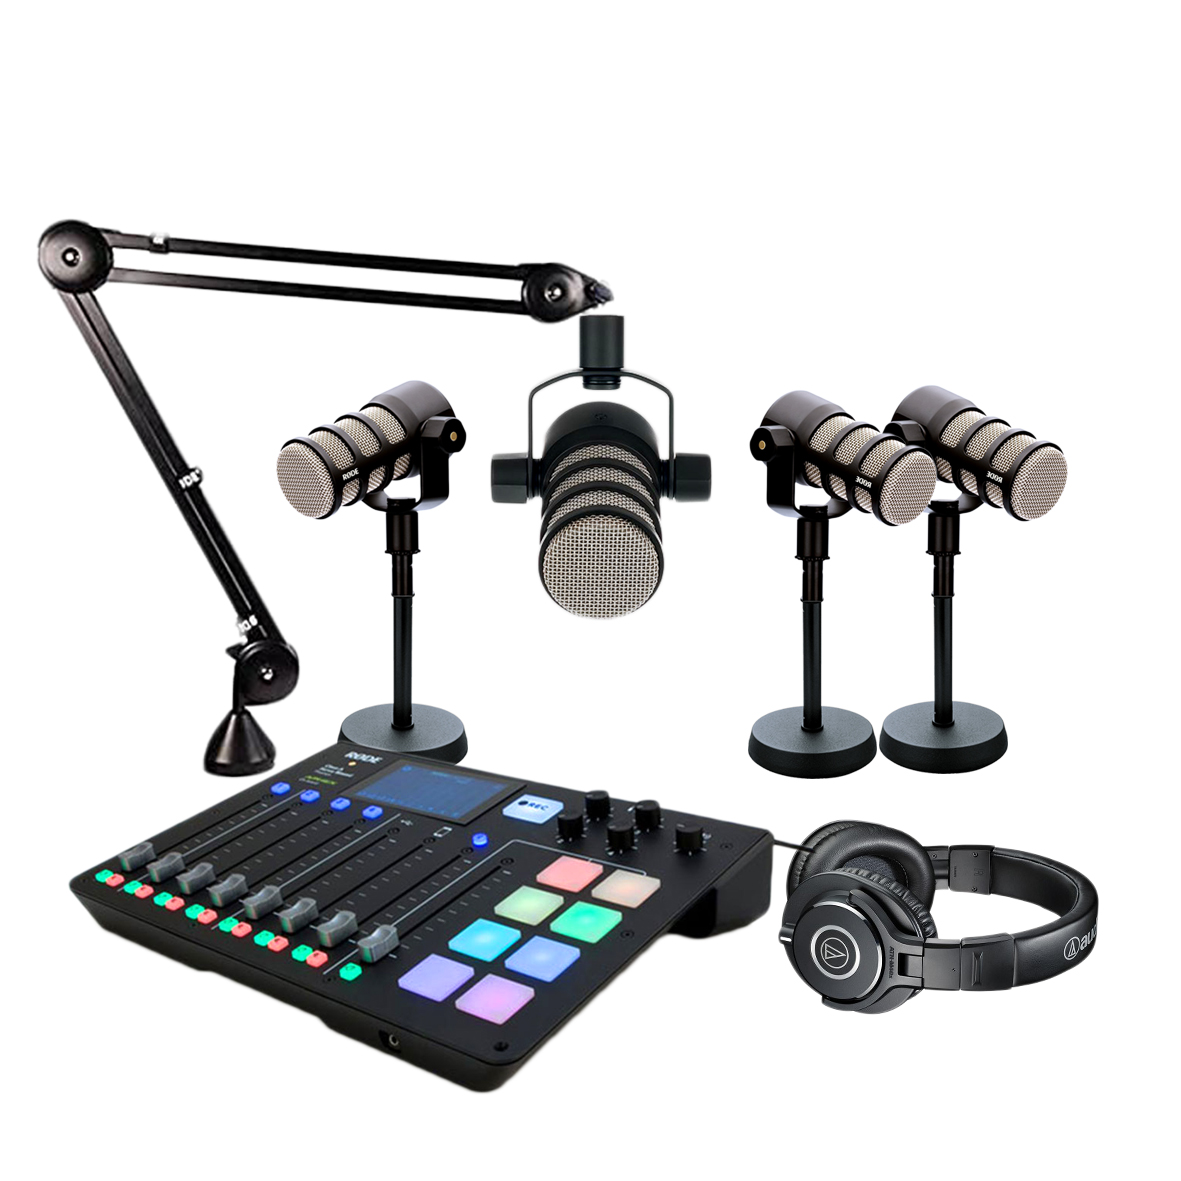 Pack Podcast Rode avec 1 table de mixage 4 micros avec pieds 4 casques